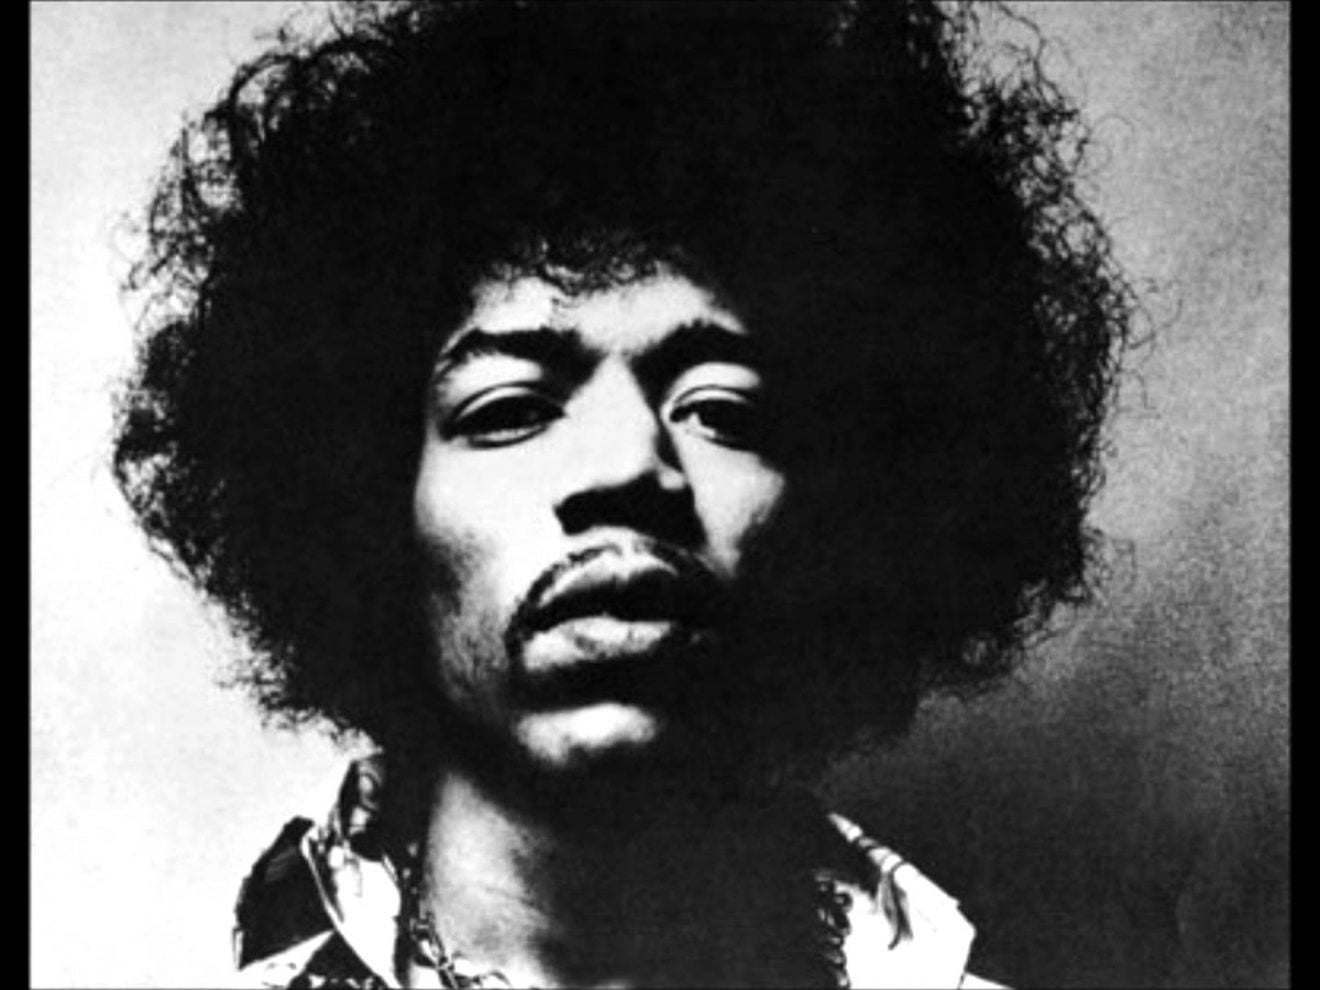 Jimi Hendrix's 